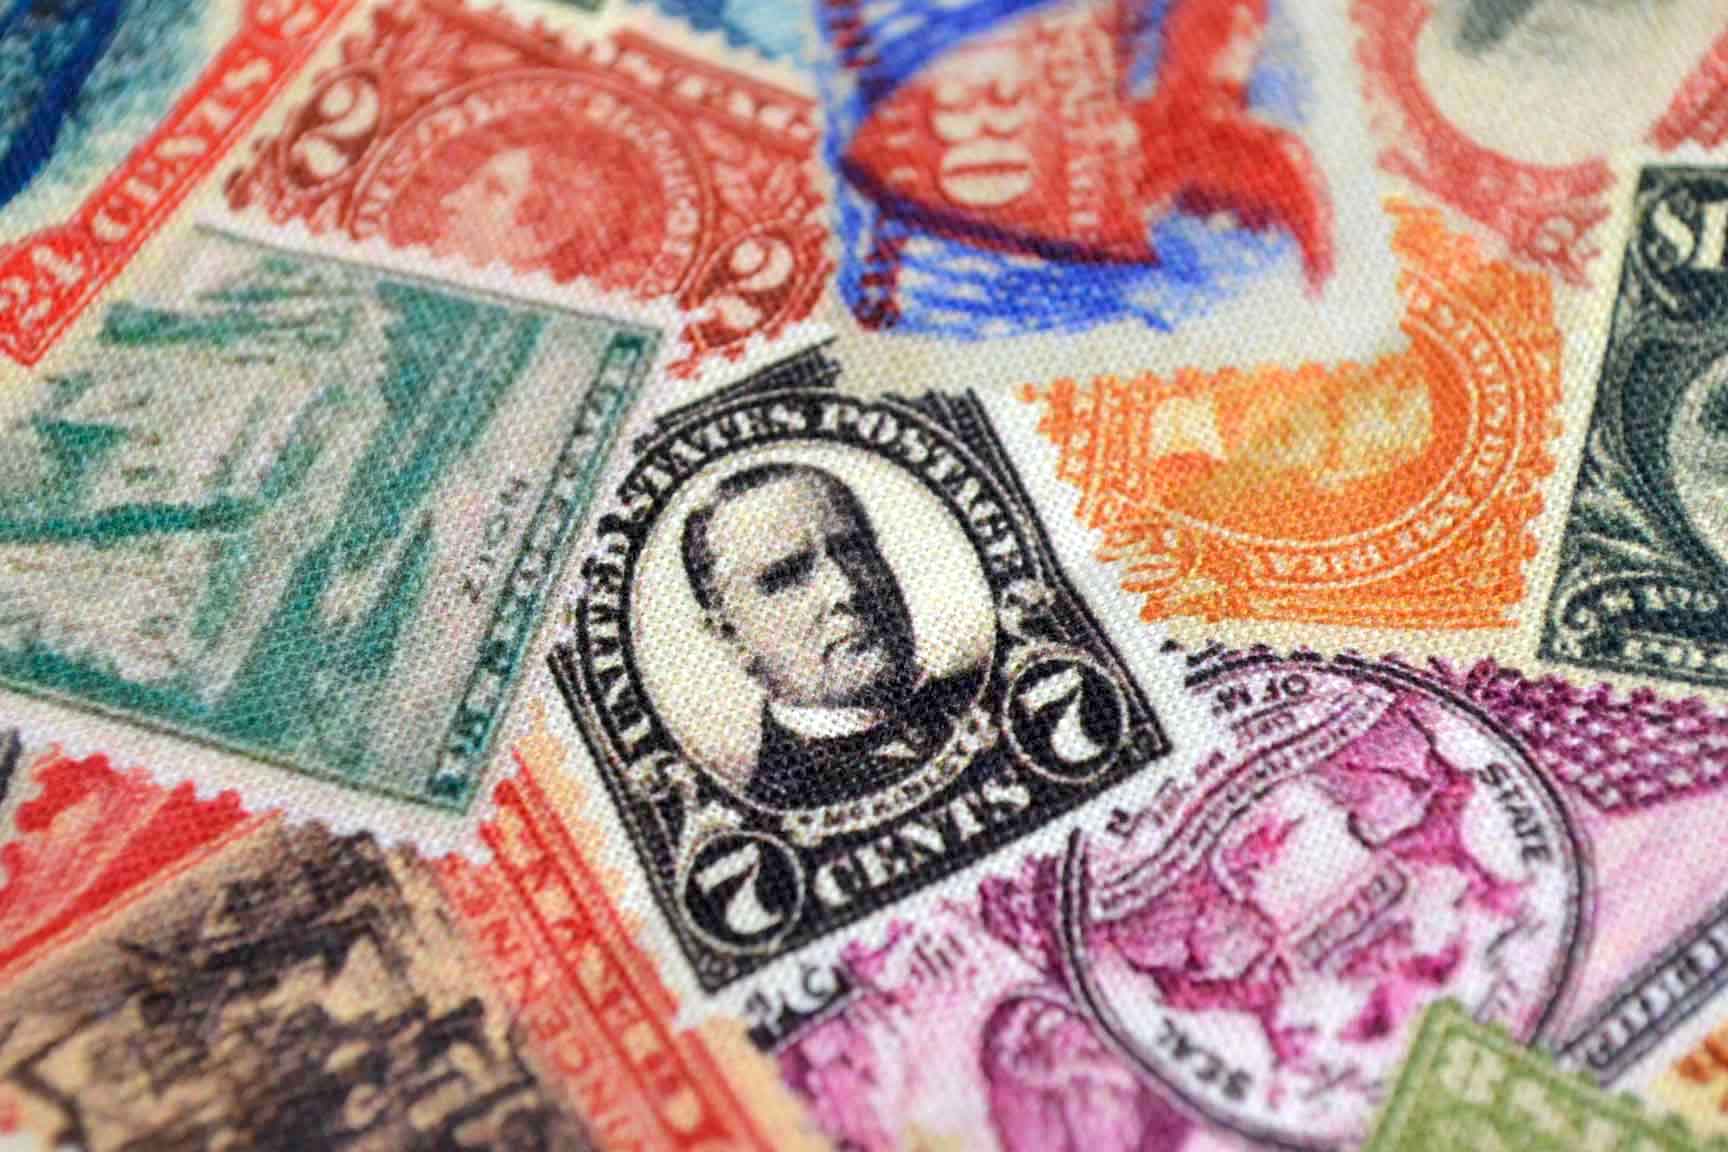 Antique Stamps, Robert Kaufman